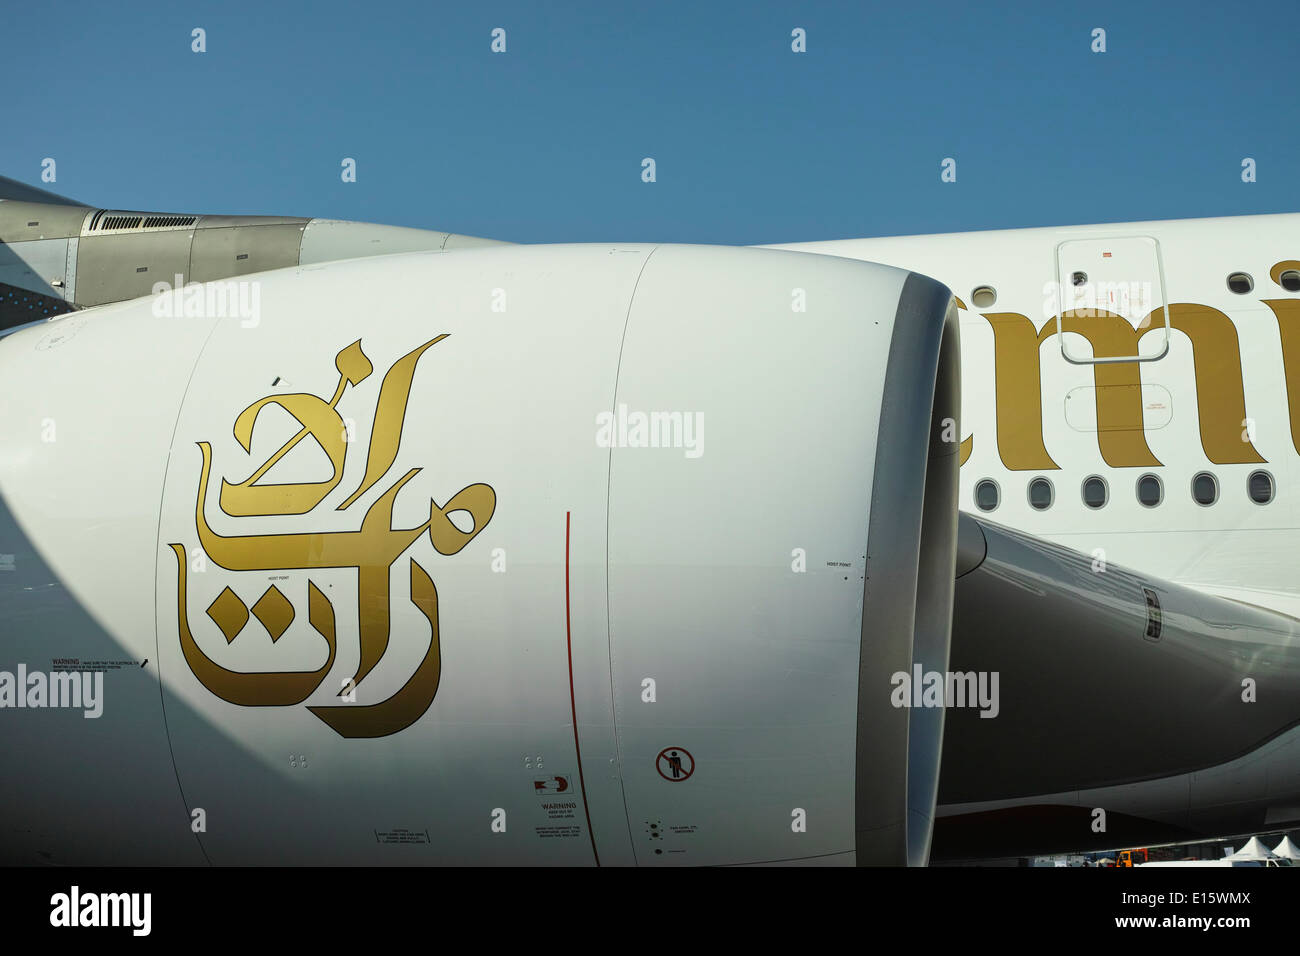 Airbus A380-800 de la compagnie aérienne Emirates. L'affichage à l'Airshow ILA Berlin 2014. Le moteur et le fuselage de détails. Banque D'Images